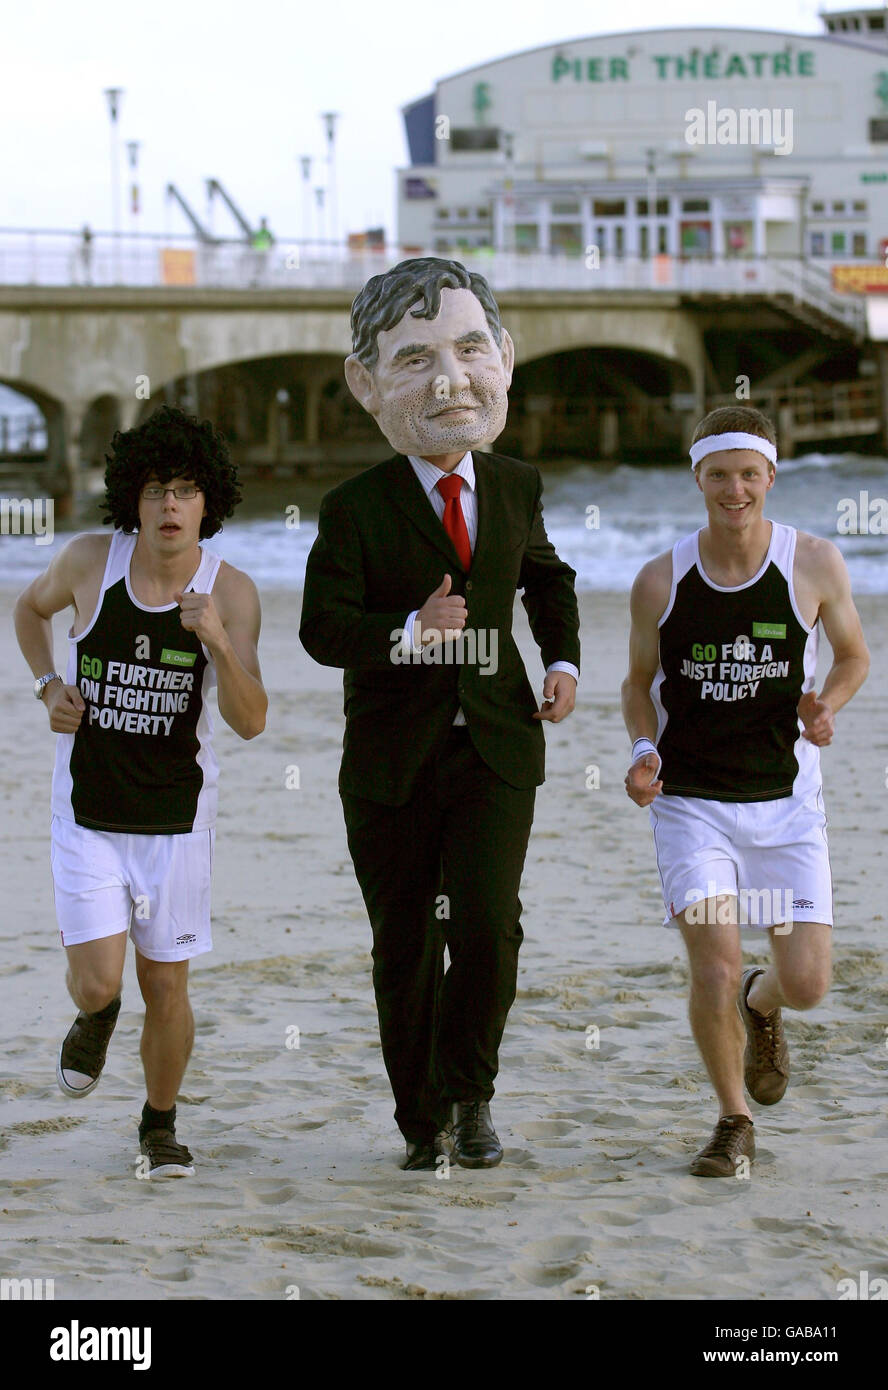 Oxfam-Aktivisten tragen Laufausrüstung und kleiden sich als Premierminister Gordon Brown am Bournemouth Beach, Dorset. Stockfoto